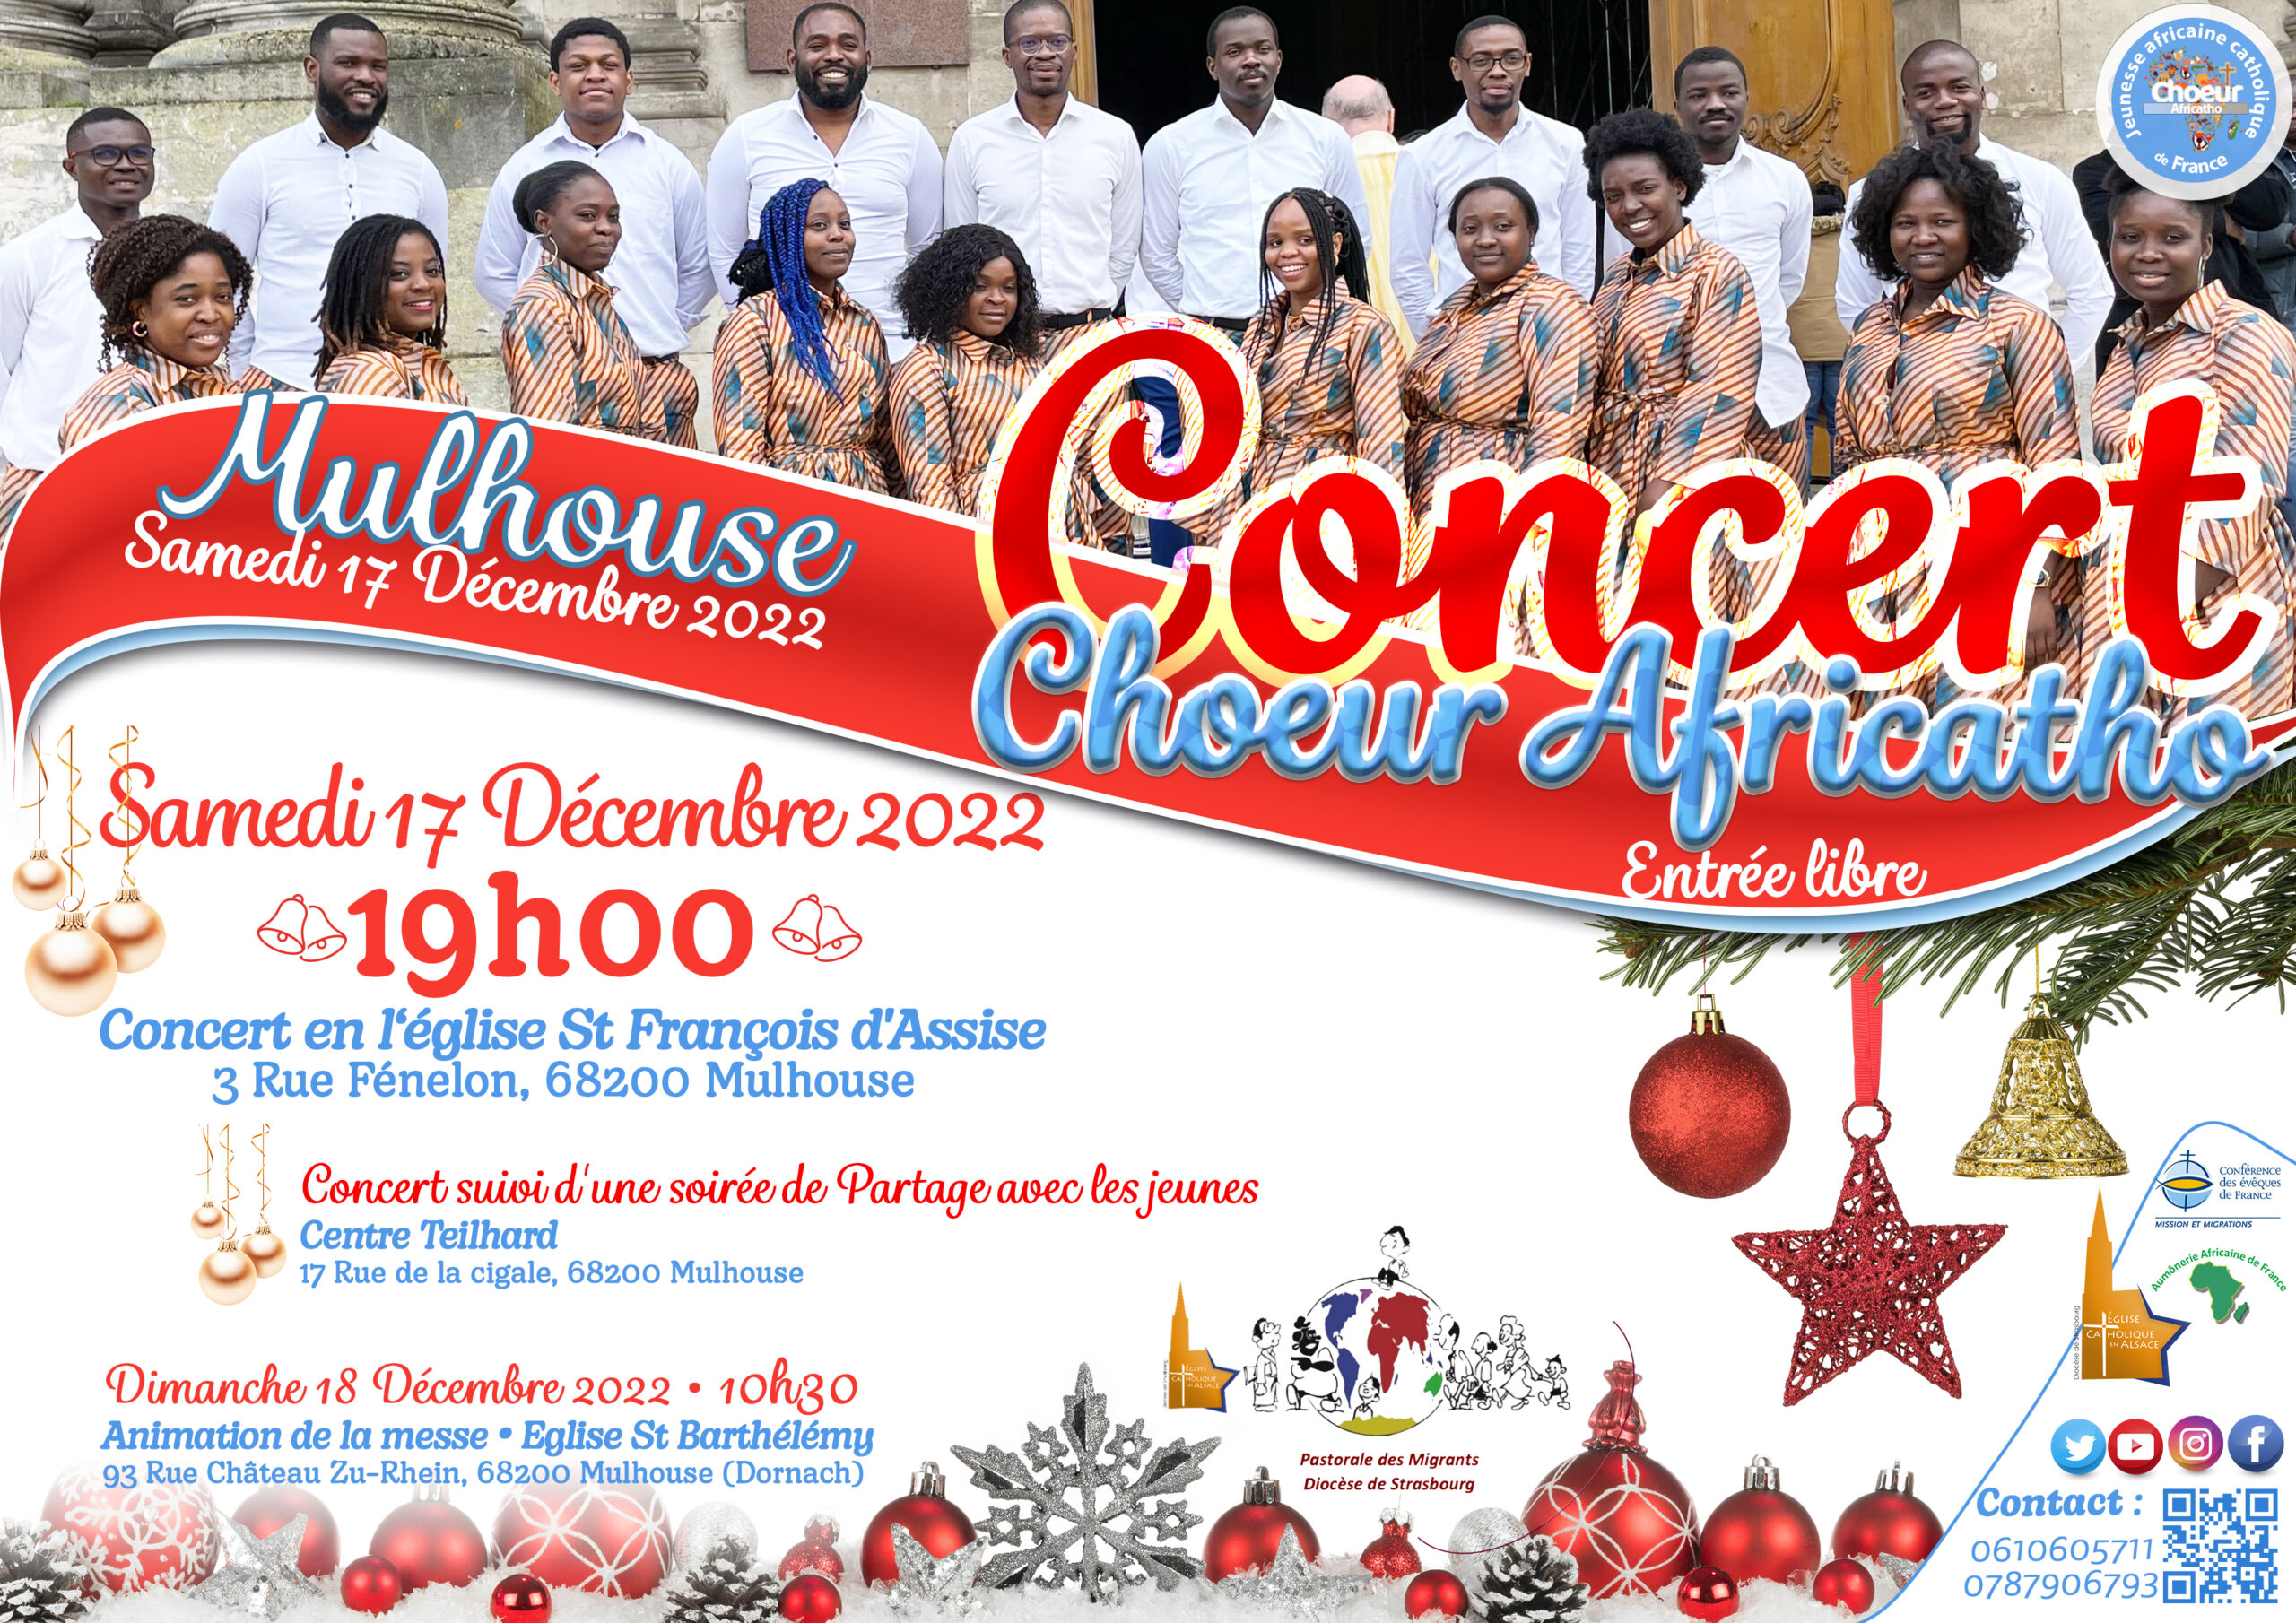 Afiche Concert Choeur #Africarho Mulhouse 17 Dec. 2022